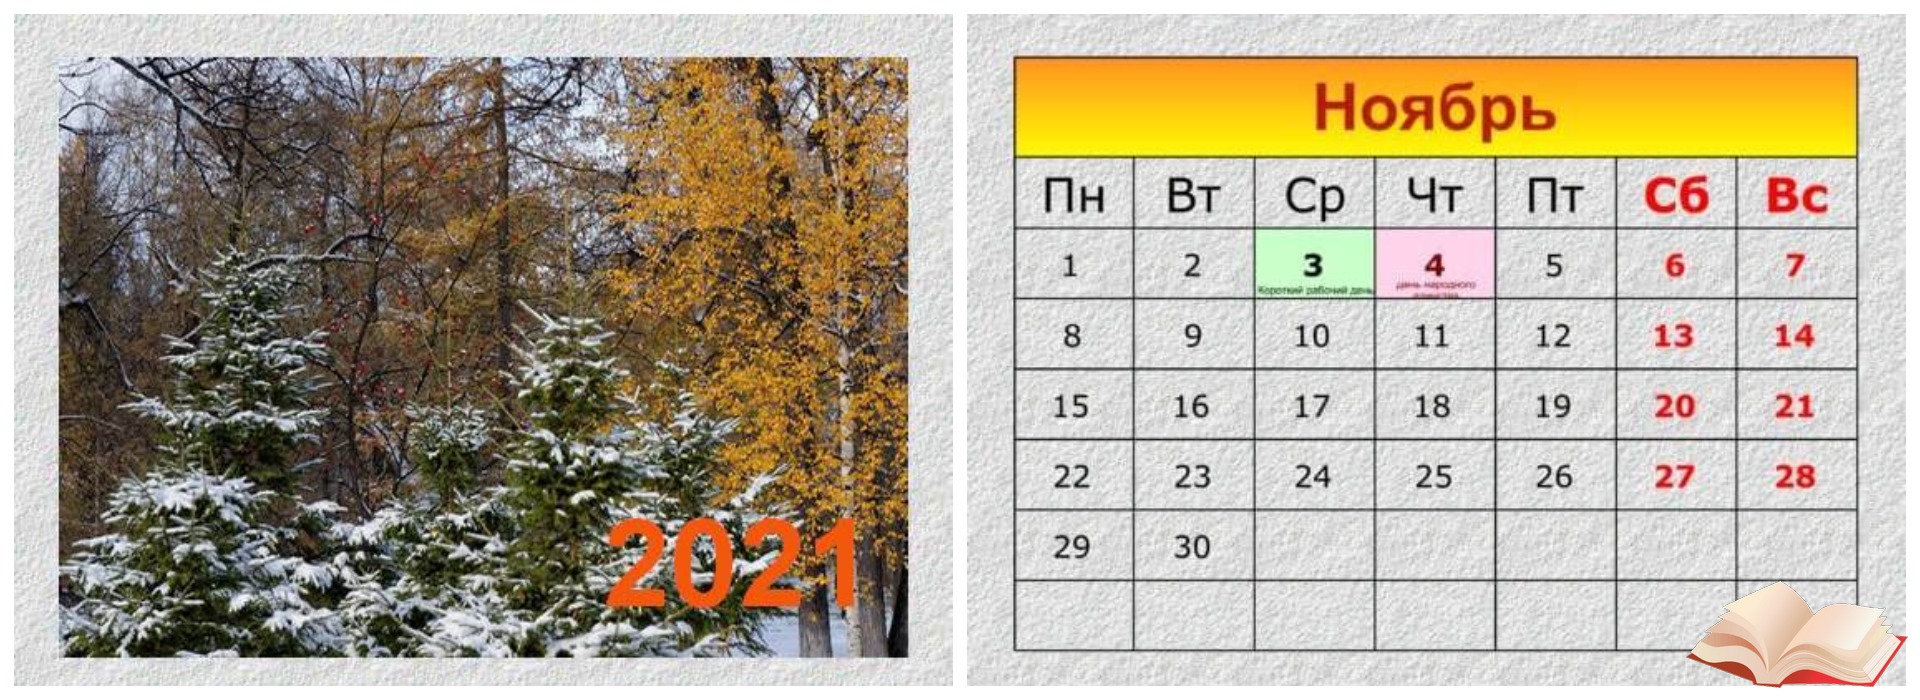 Изменениями 2016 ноябрь. Календарь ноябрь 2021. Календарь на ноябрь 2021г. Календарик ноябрь. Календарь на ноябрь 2021 года.